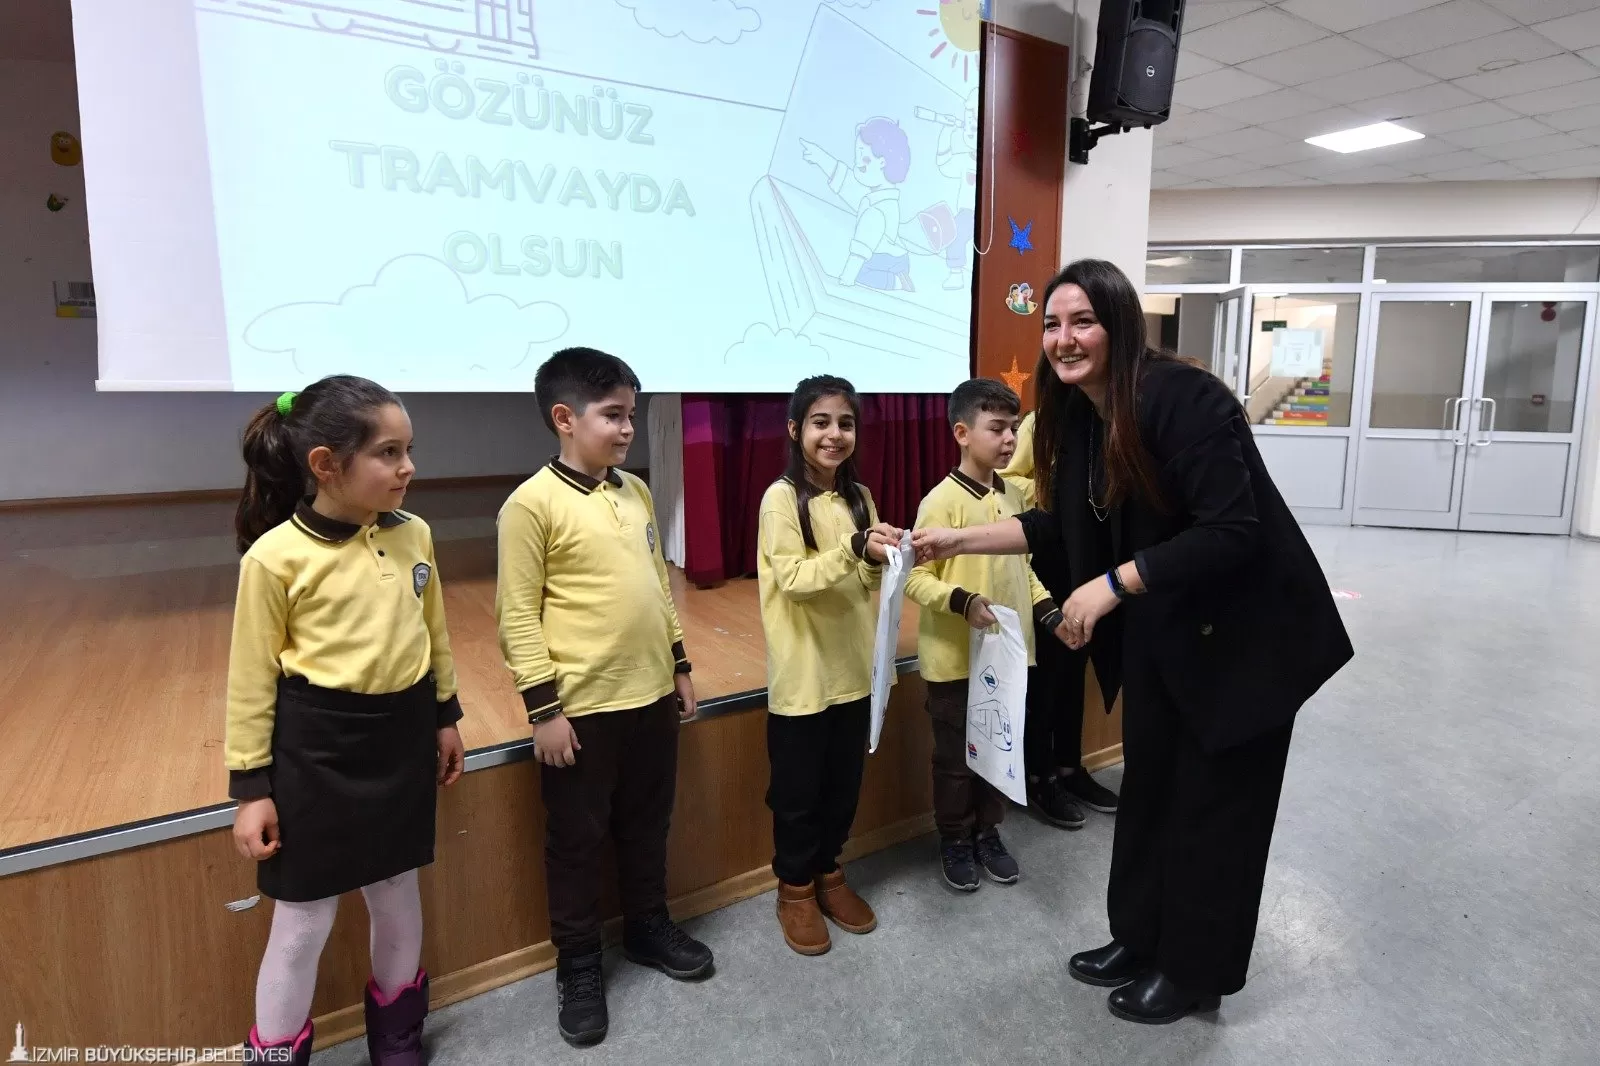 İzmir Büyükşehir Belediyesi, Çiğli Tramvayında 3. ve 4. sınıf öğrencilerine yönelik "Gözünüz Tramvayda Olsun" eğitim programı başlattı. 